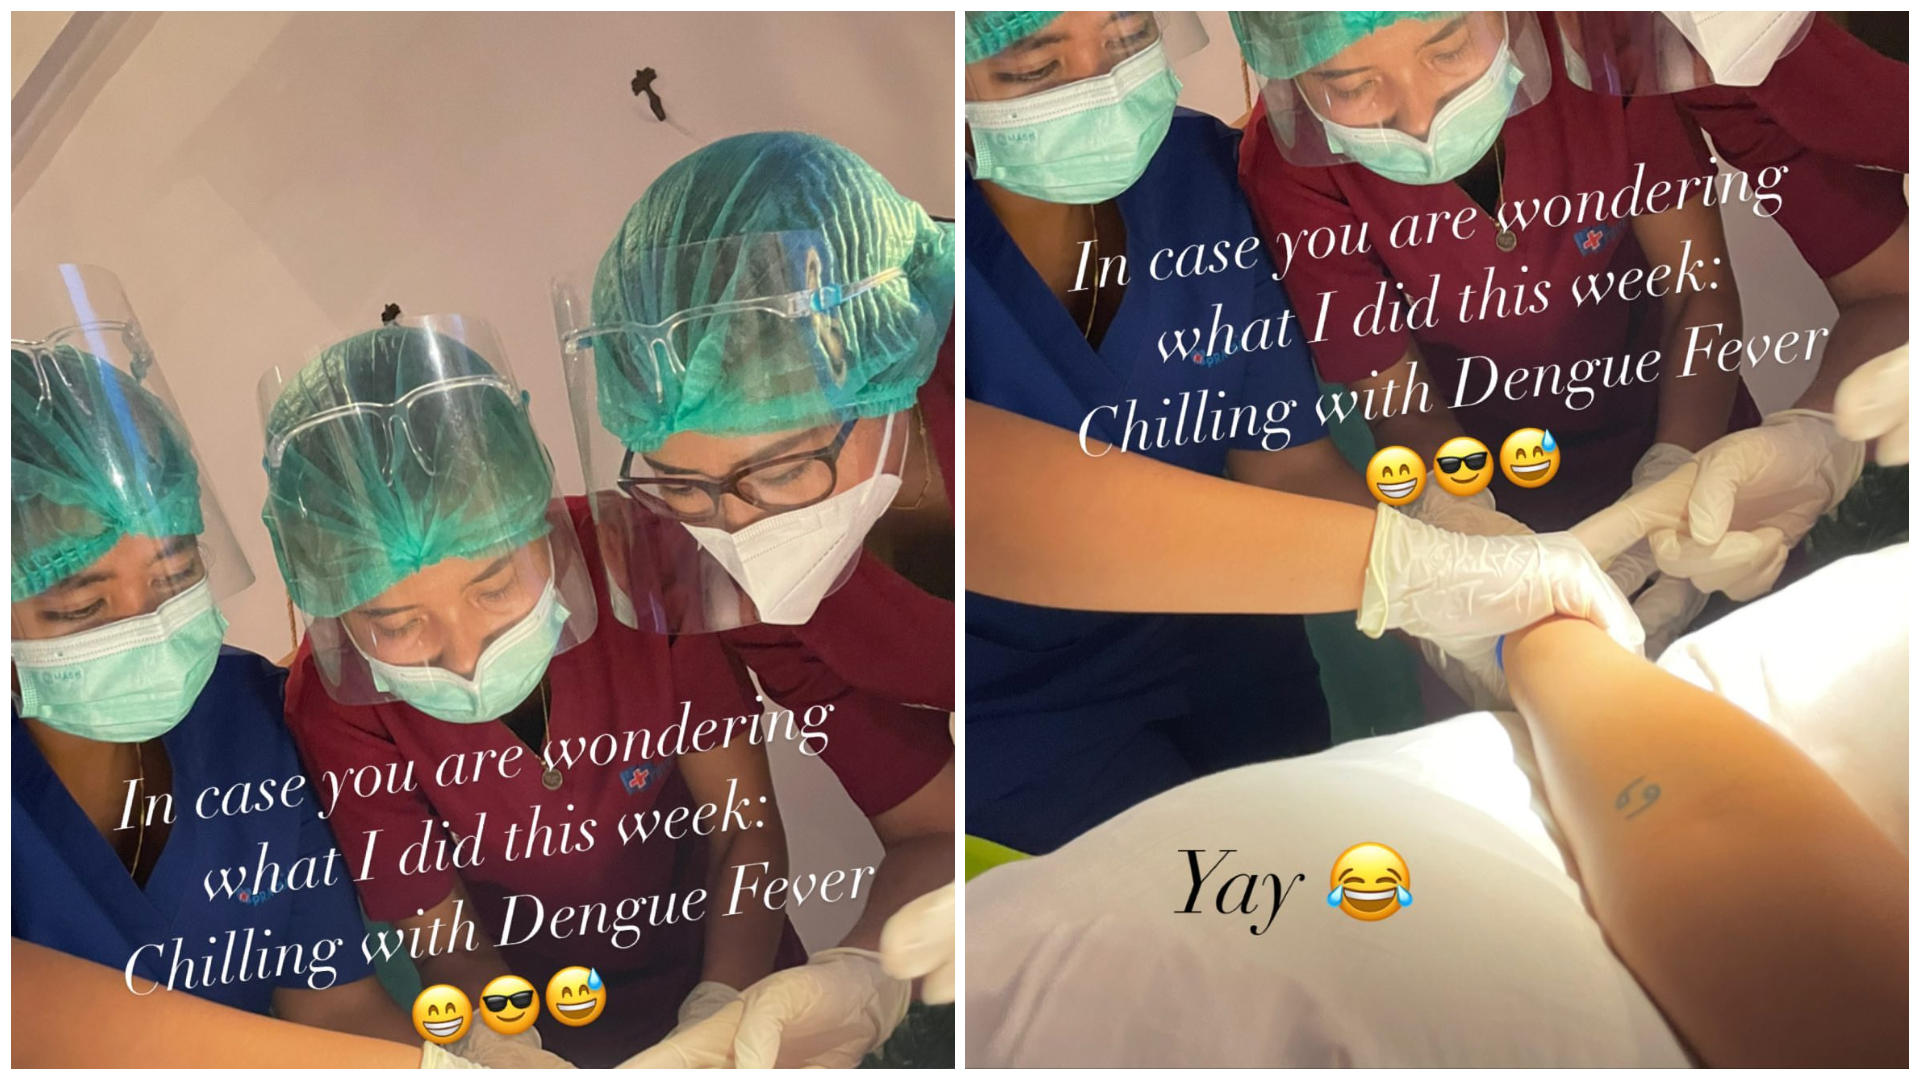 In ihrer Instagram-Story zeigt sich Bonnie Strange umringt von Krankenhauspersonal.